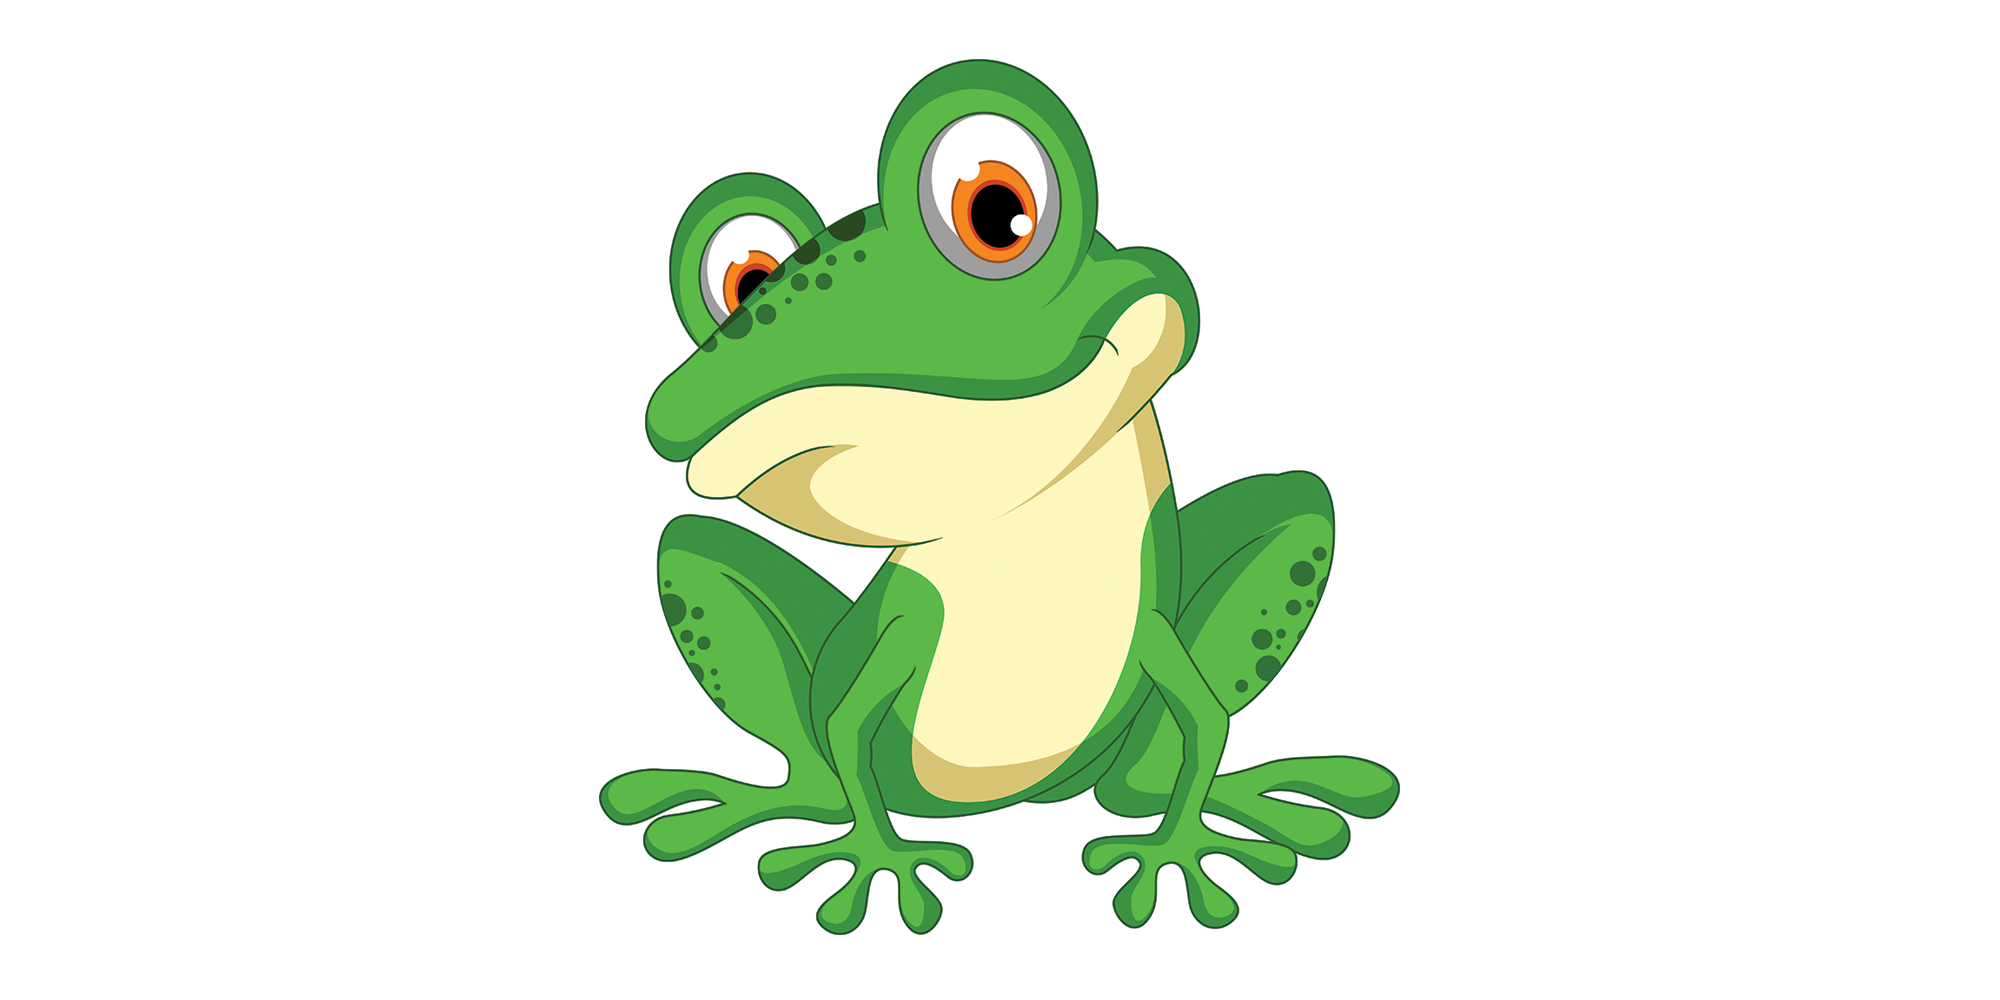 Cartoon frog